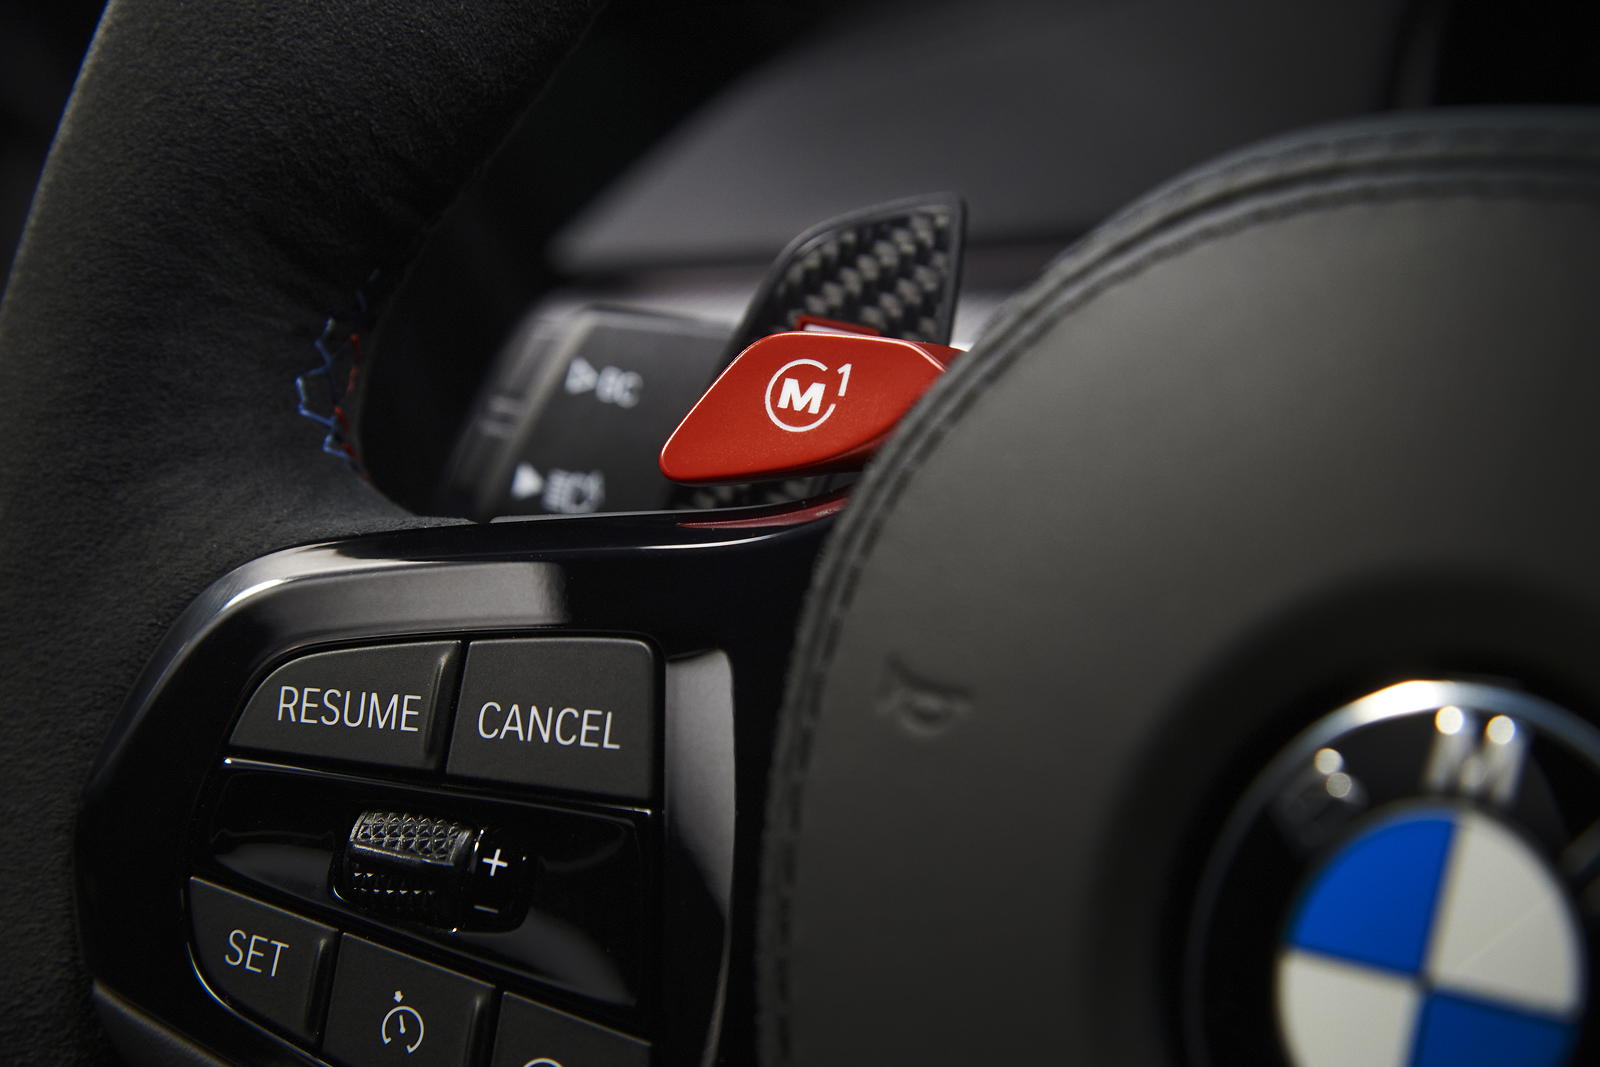 Foto: BMW M5 CS mit roten, prgrammierbaren M-Tasten am Lenkrad. (vergrößert)